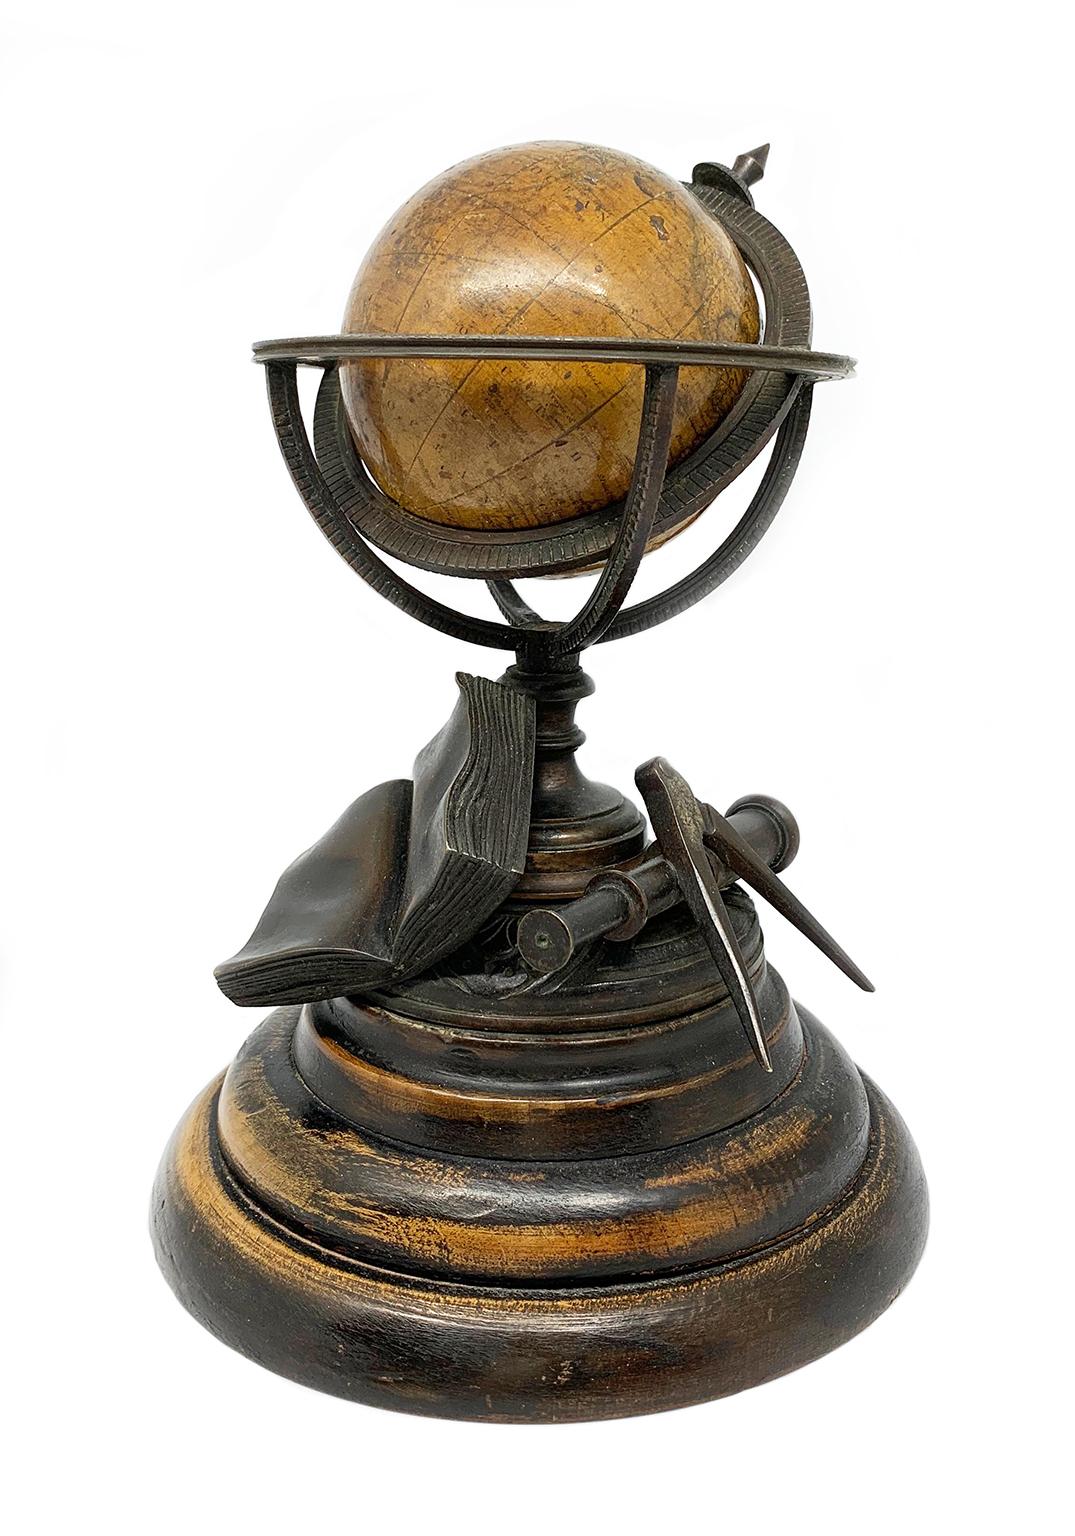 Globe terrestre miniature
Newton & Son
Londres, post 1833, ante 1858
Papier, papier mâché, bronze et bois
Elle mesure : diamètre de la sphère 7,6 cm (2,95 in) ; diamètre de la base en bois 15,3 cm (6,02 in) ; hauteur 21,24 cm (8,36 in).
Poids :